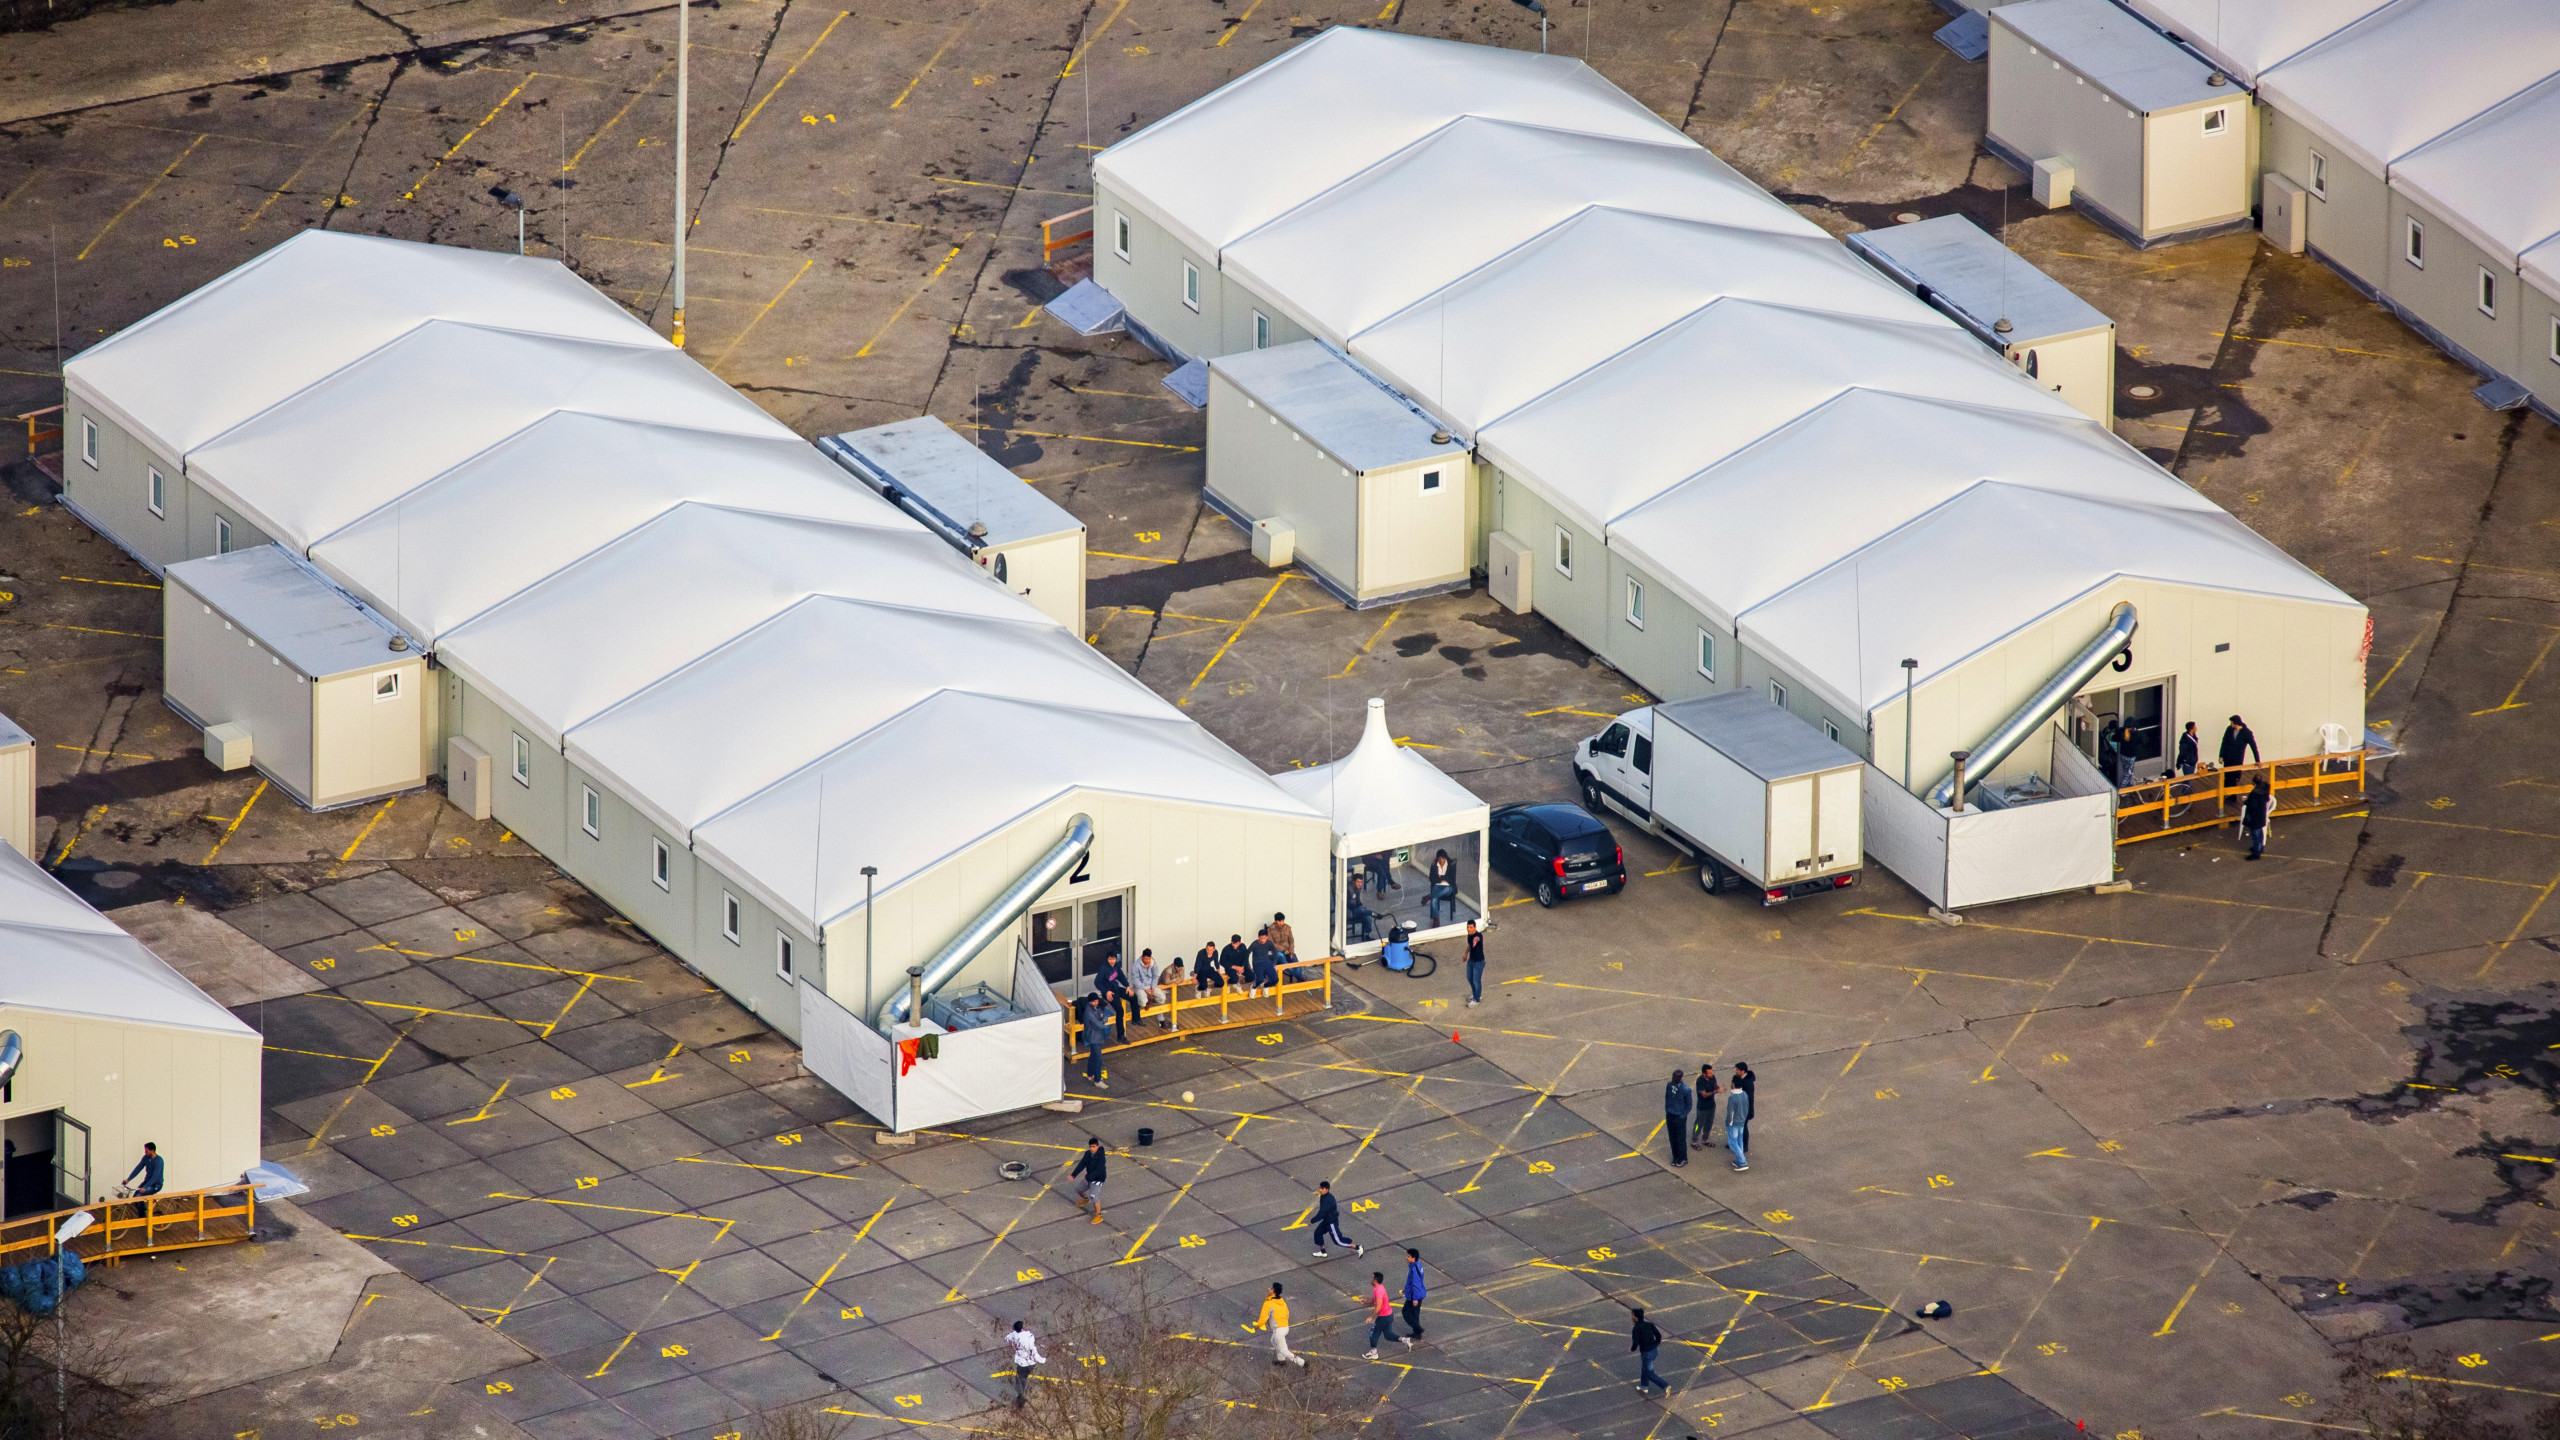 Fluechtlingsheim und Asylunterkunft, Aufbau einer Zeltstadt fuer Fluechtlinge in Leichtbauweise auf dem ehemaligen Parkplatz an der Alten Wittener Strasse in Bochum, 17.02.2016